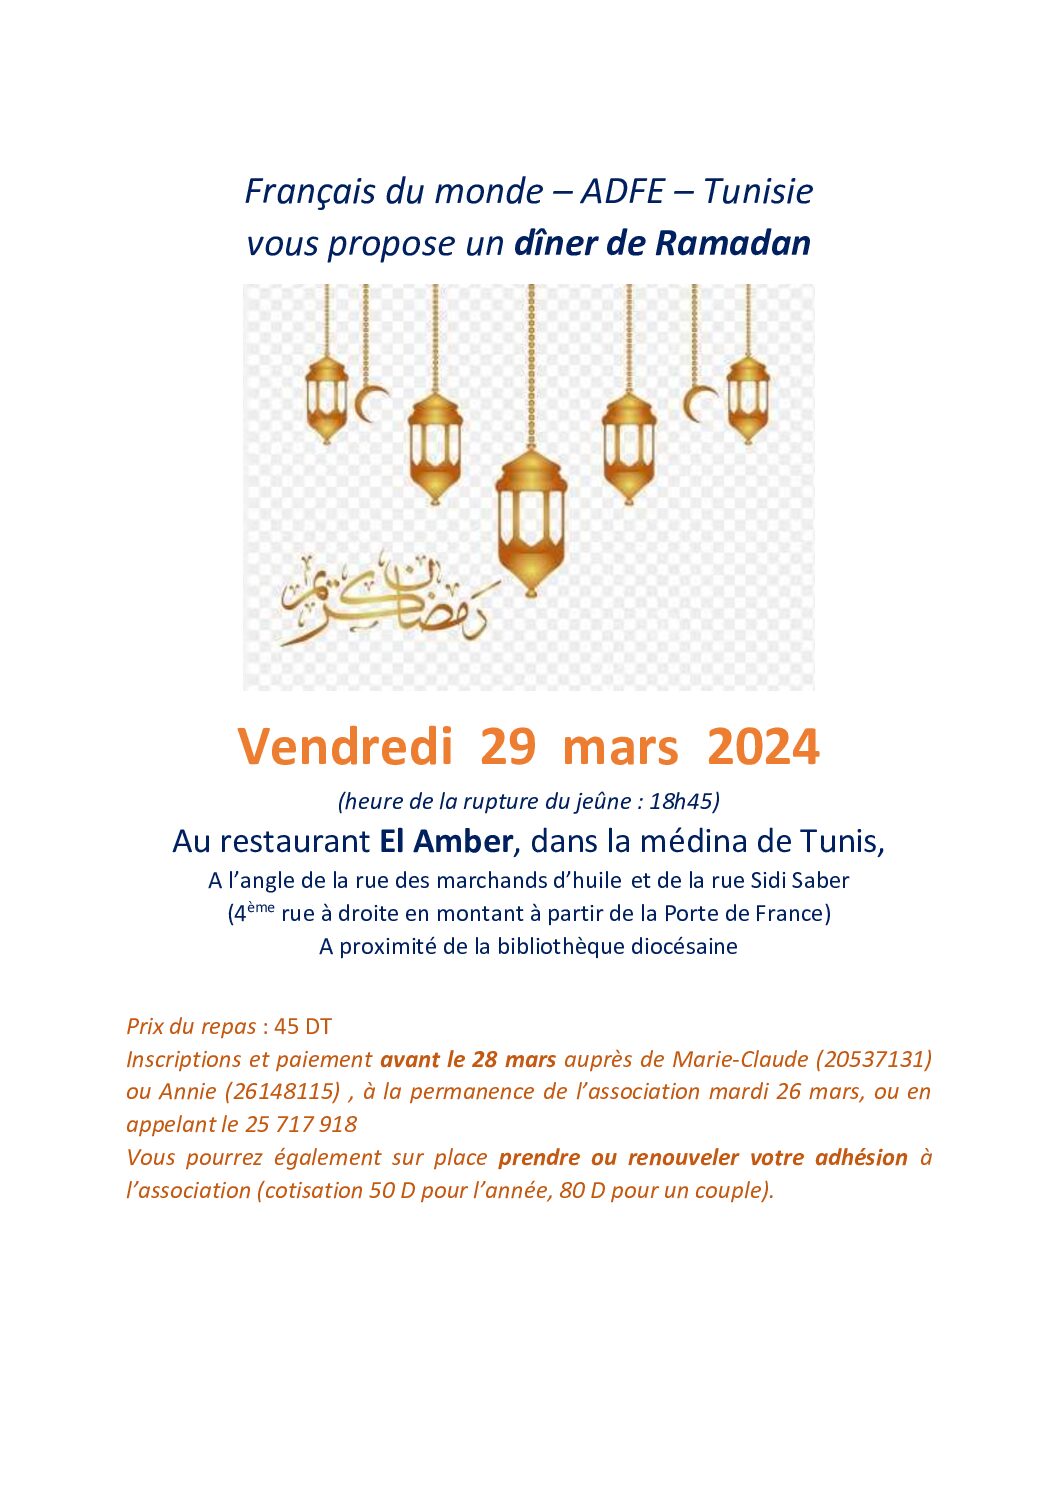 Français du monde – ADFE – Tunisie vous propose un dîner de Ramadan